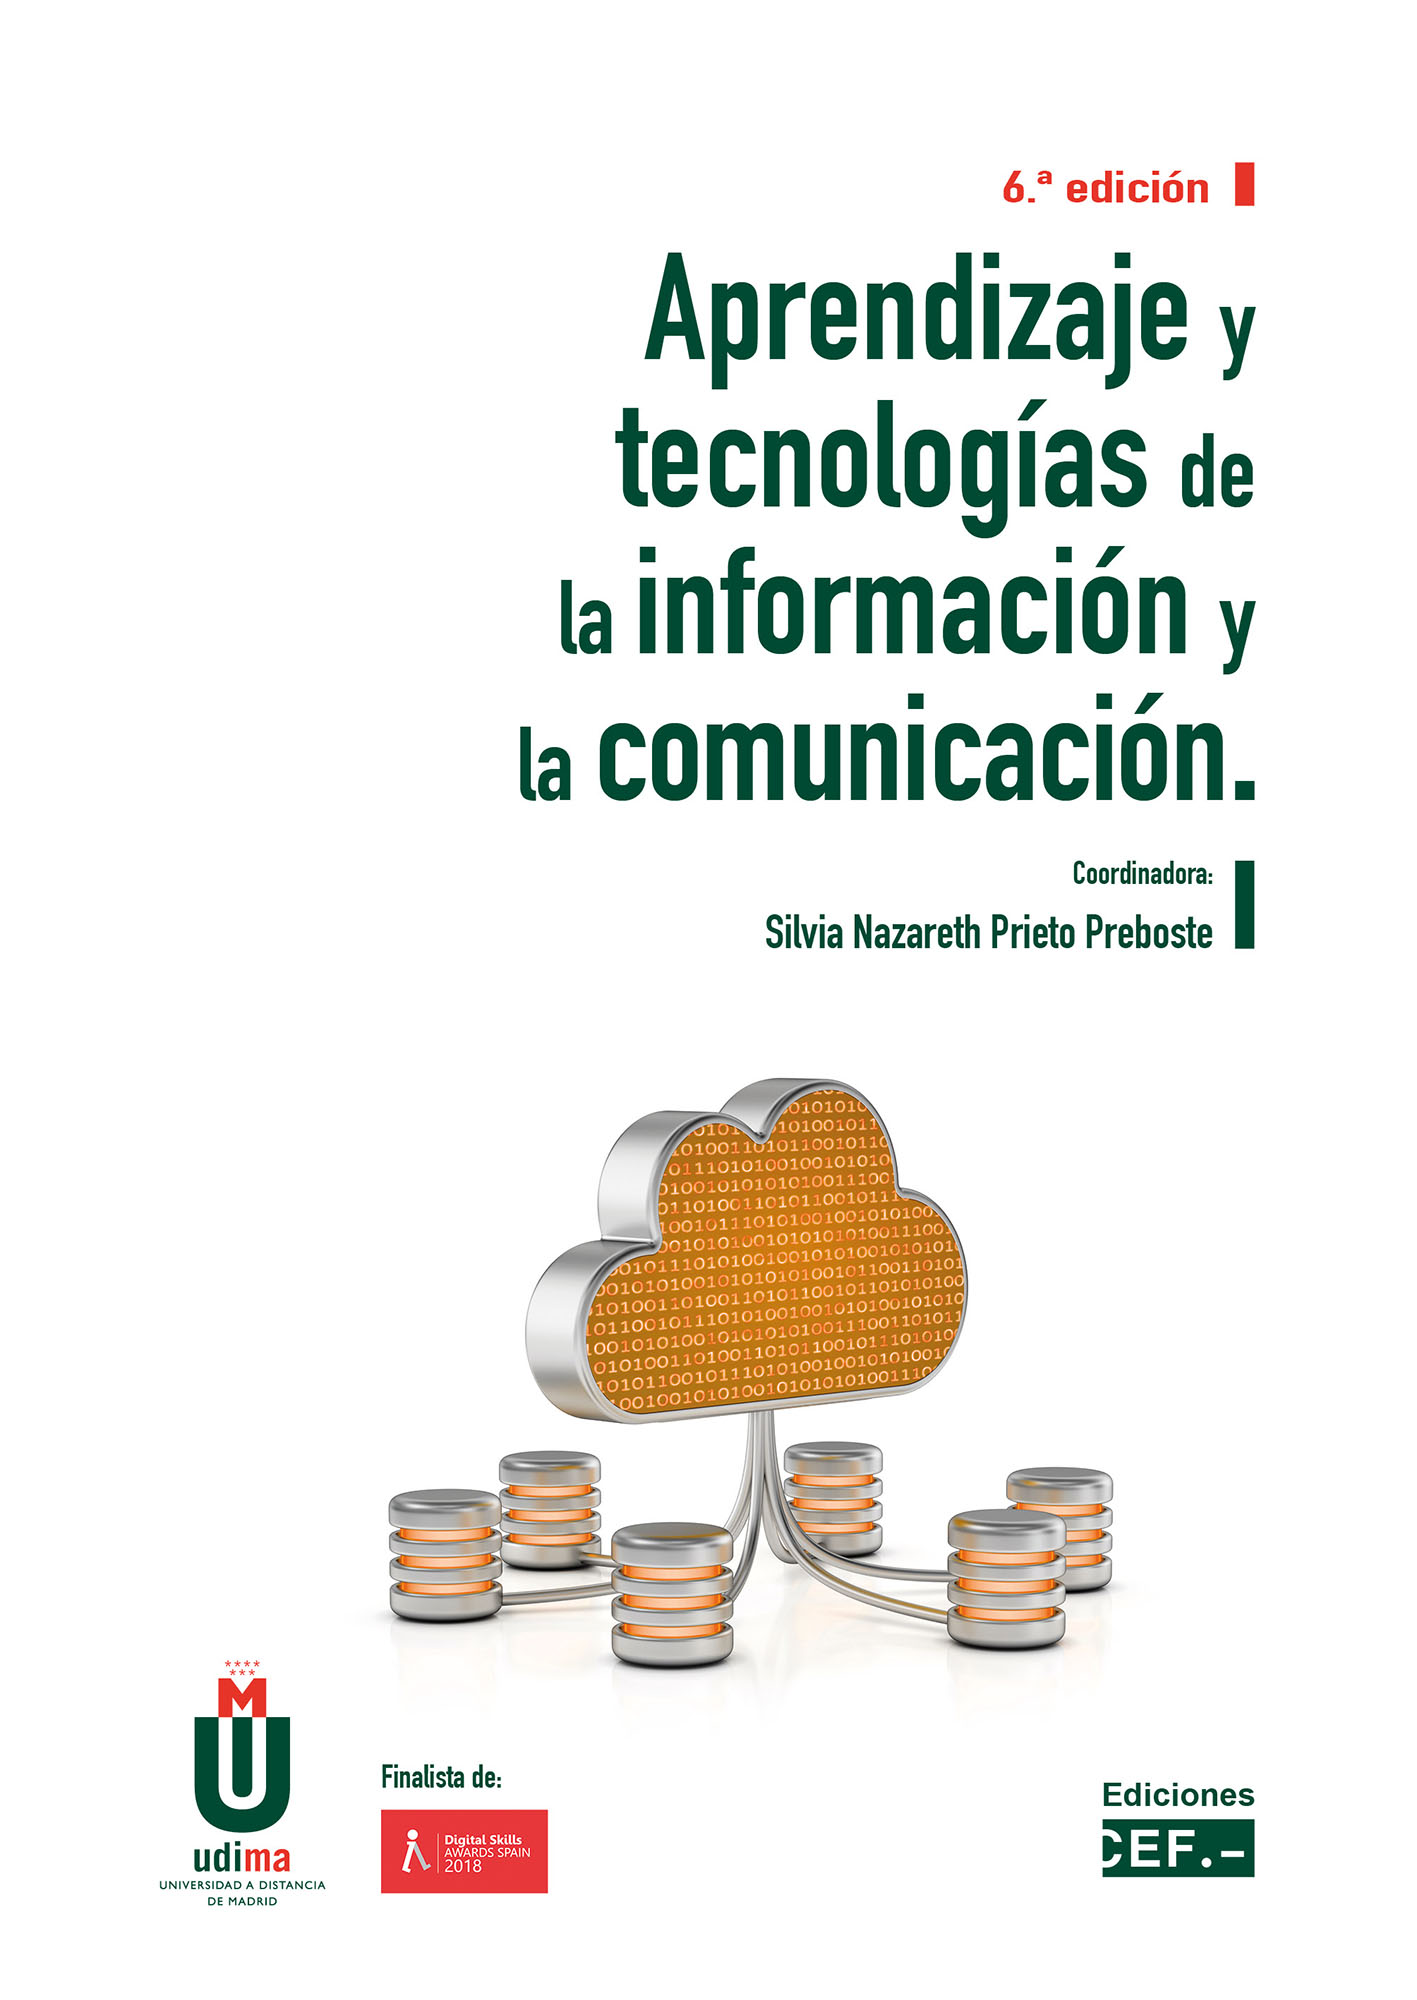 Aprendizaje y tecnologías de la información y la comunicación